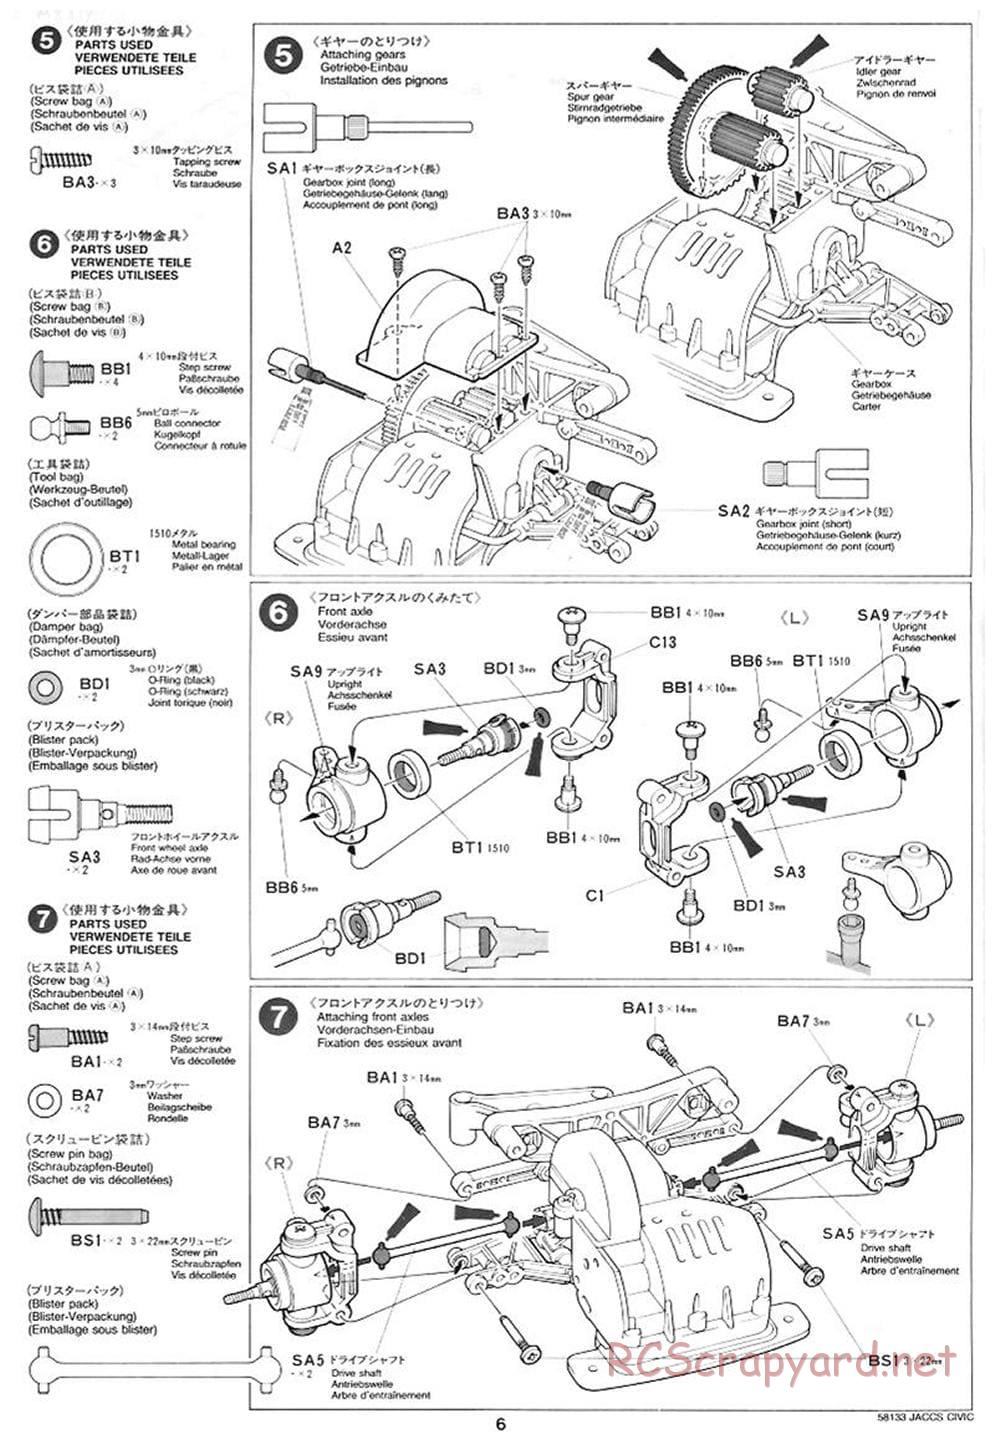 Tamiya - JACCS Honda Civic - FF-01 Chassis - Manual - Page 6